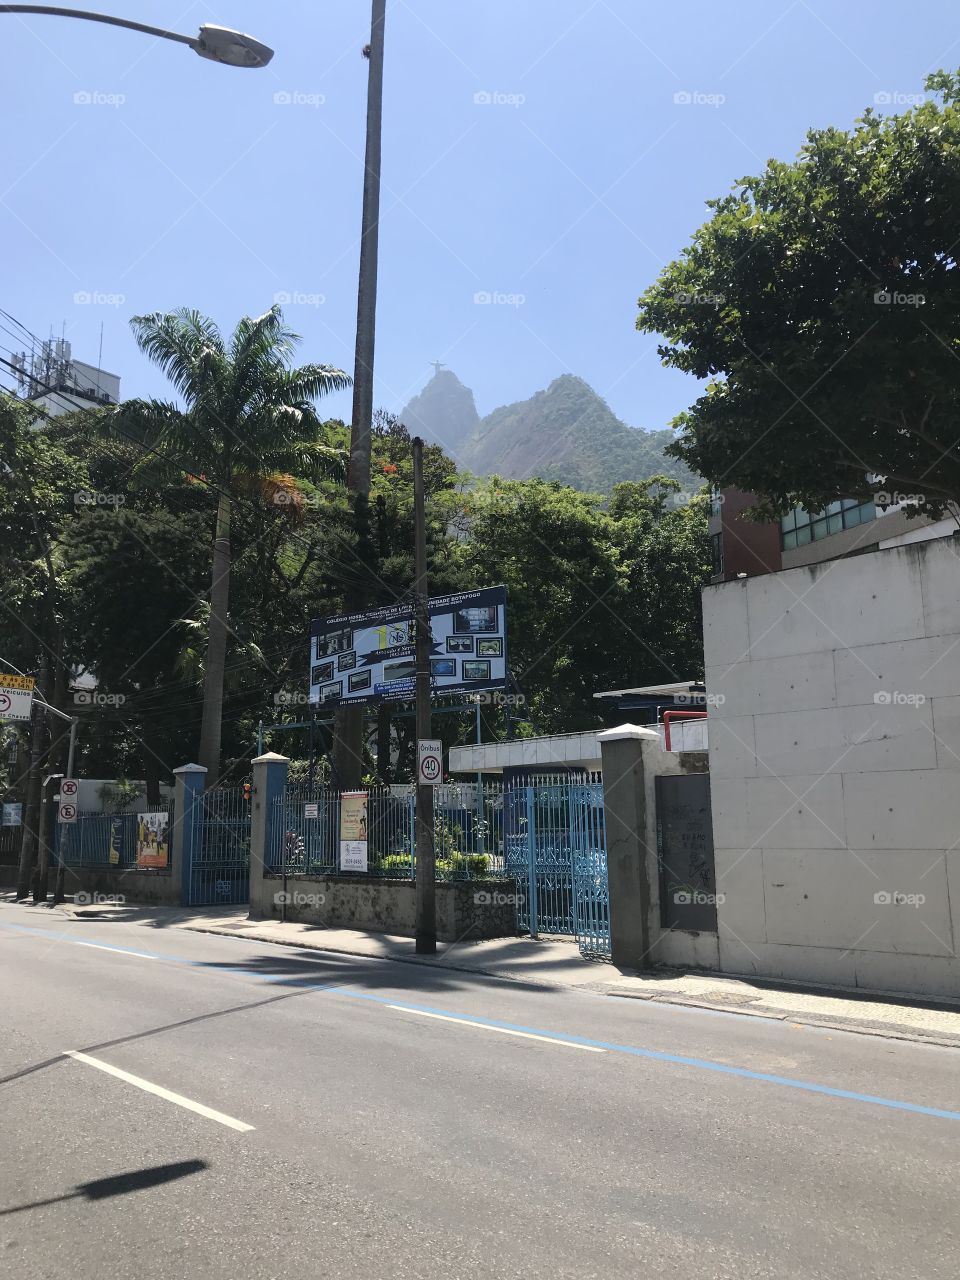 Arquitetura. Do bairro de Botafogo! Rio de Janeiro.